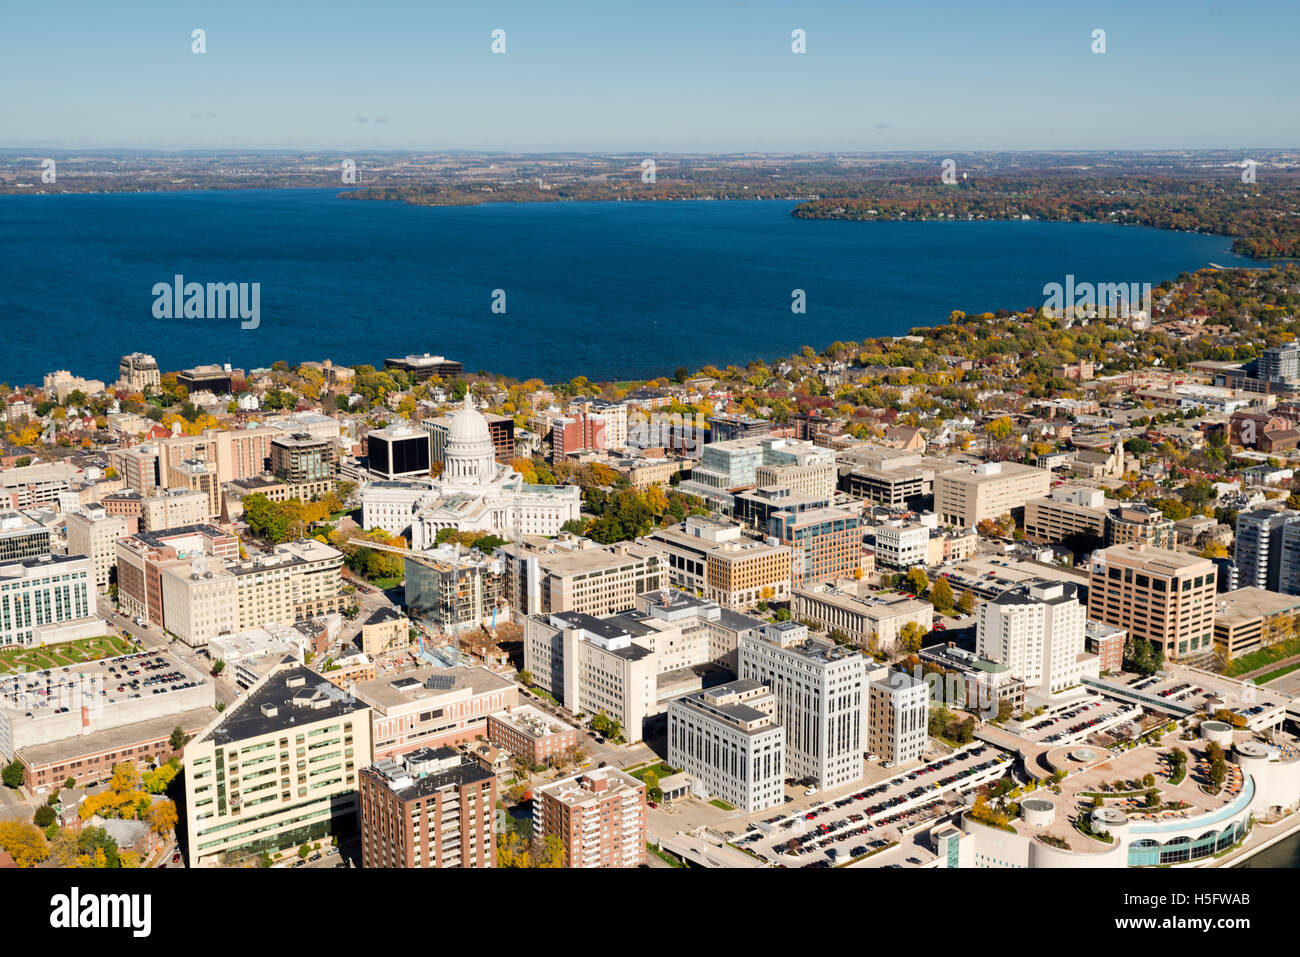 Una veduta aerea di Madison, Wisconsin, il Campidoglio e l'istmo, circondata da laghi Mendota (sopra) e Monona (sotto). Foto Stock